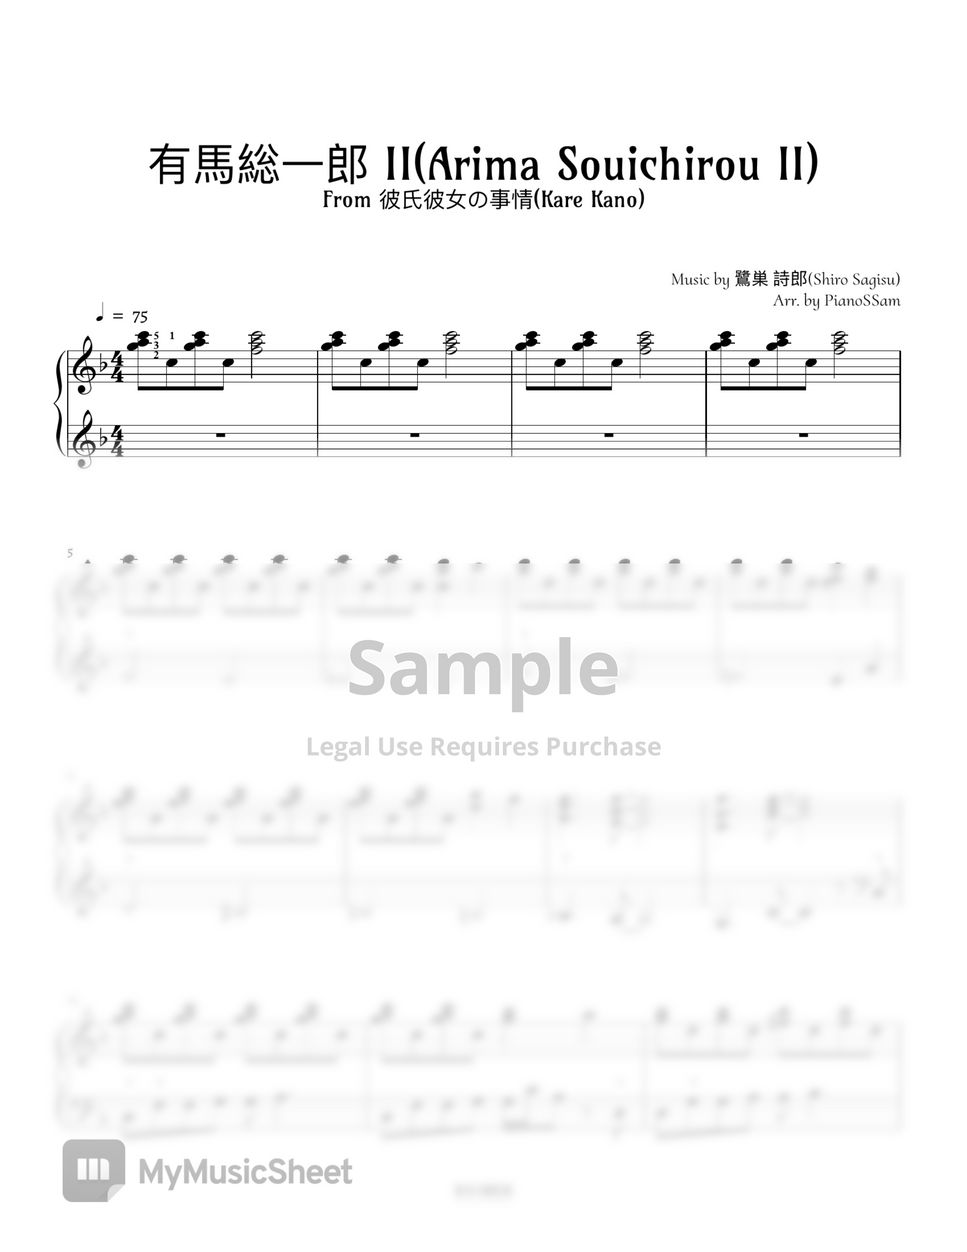 彼氏彼女の事情 Kare Kano  그남자 그여자의 사정 - 有馬総一郎Ⅱ(ARIMA SOUICHIROU 2) 아리마 소이치로2 by PianoSSam